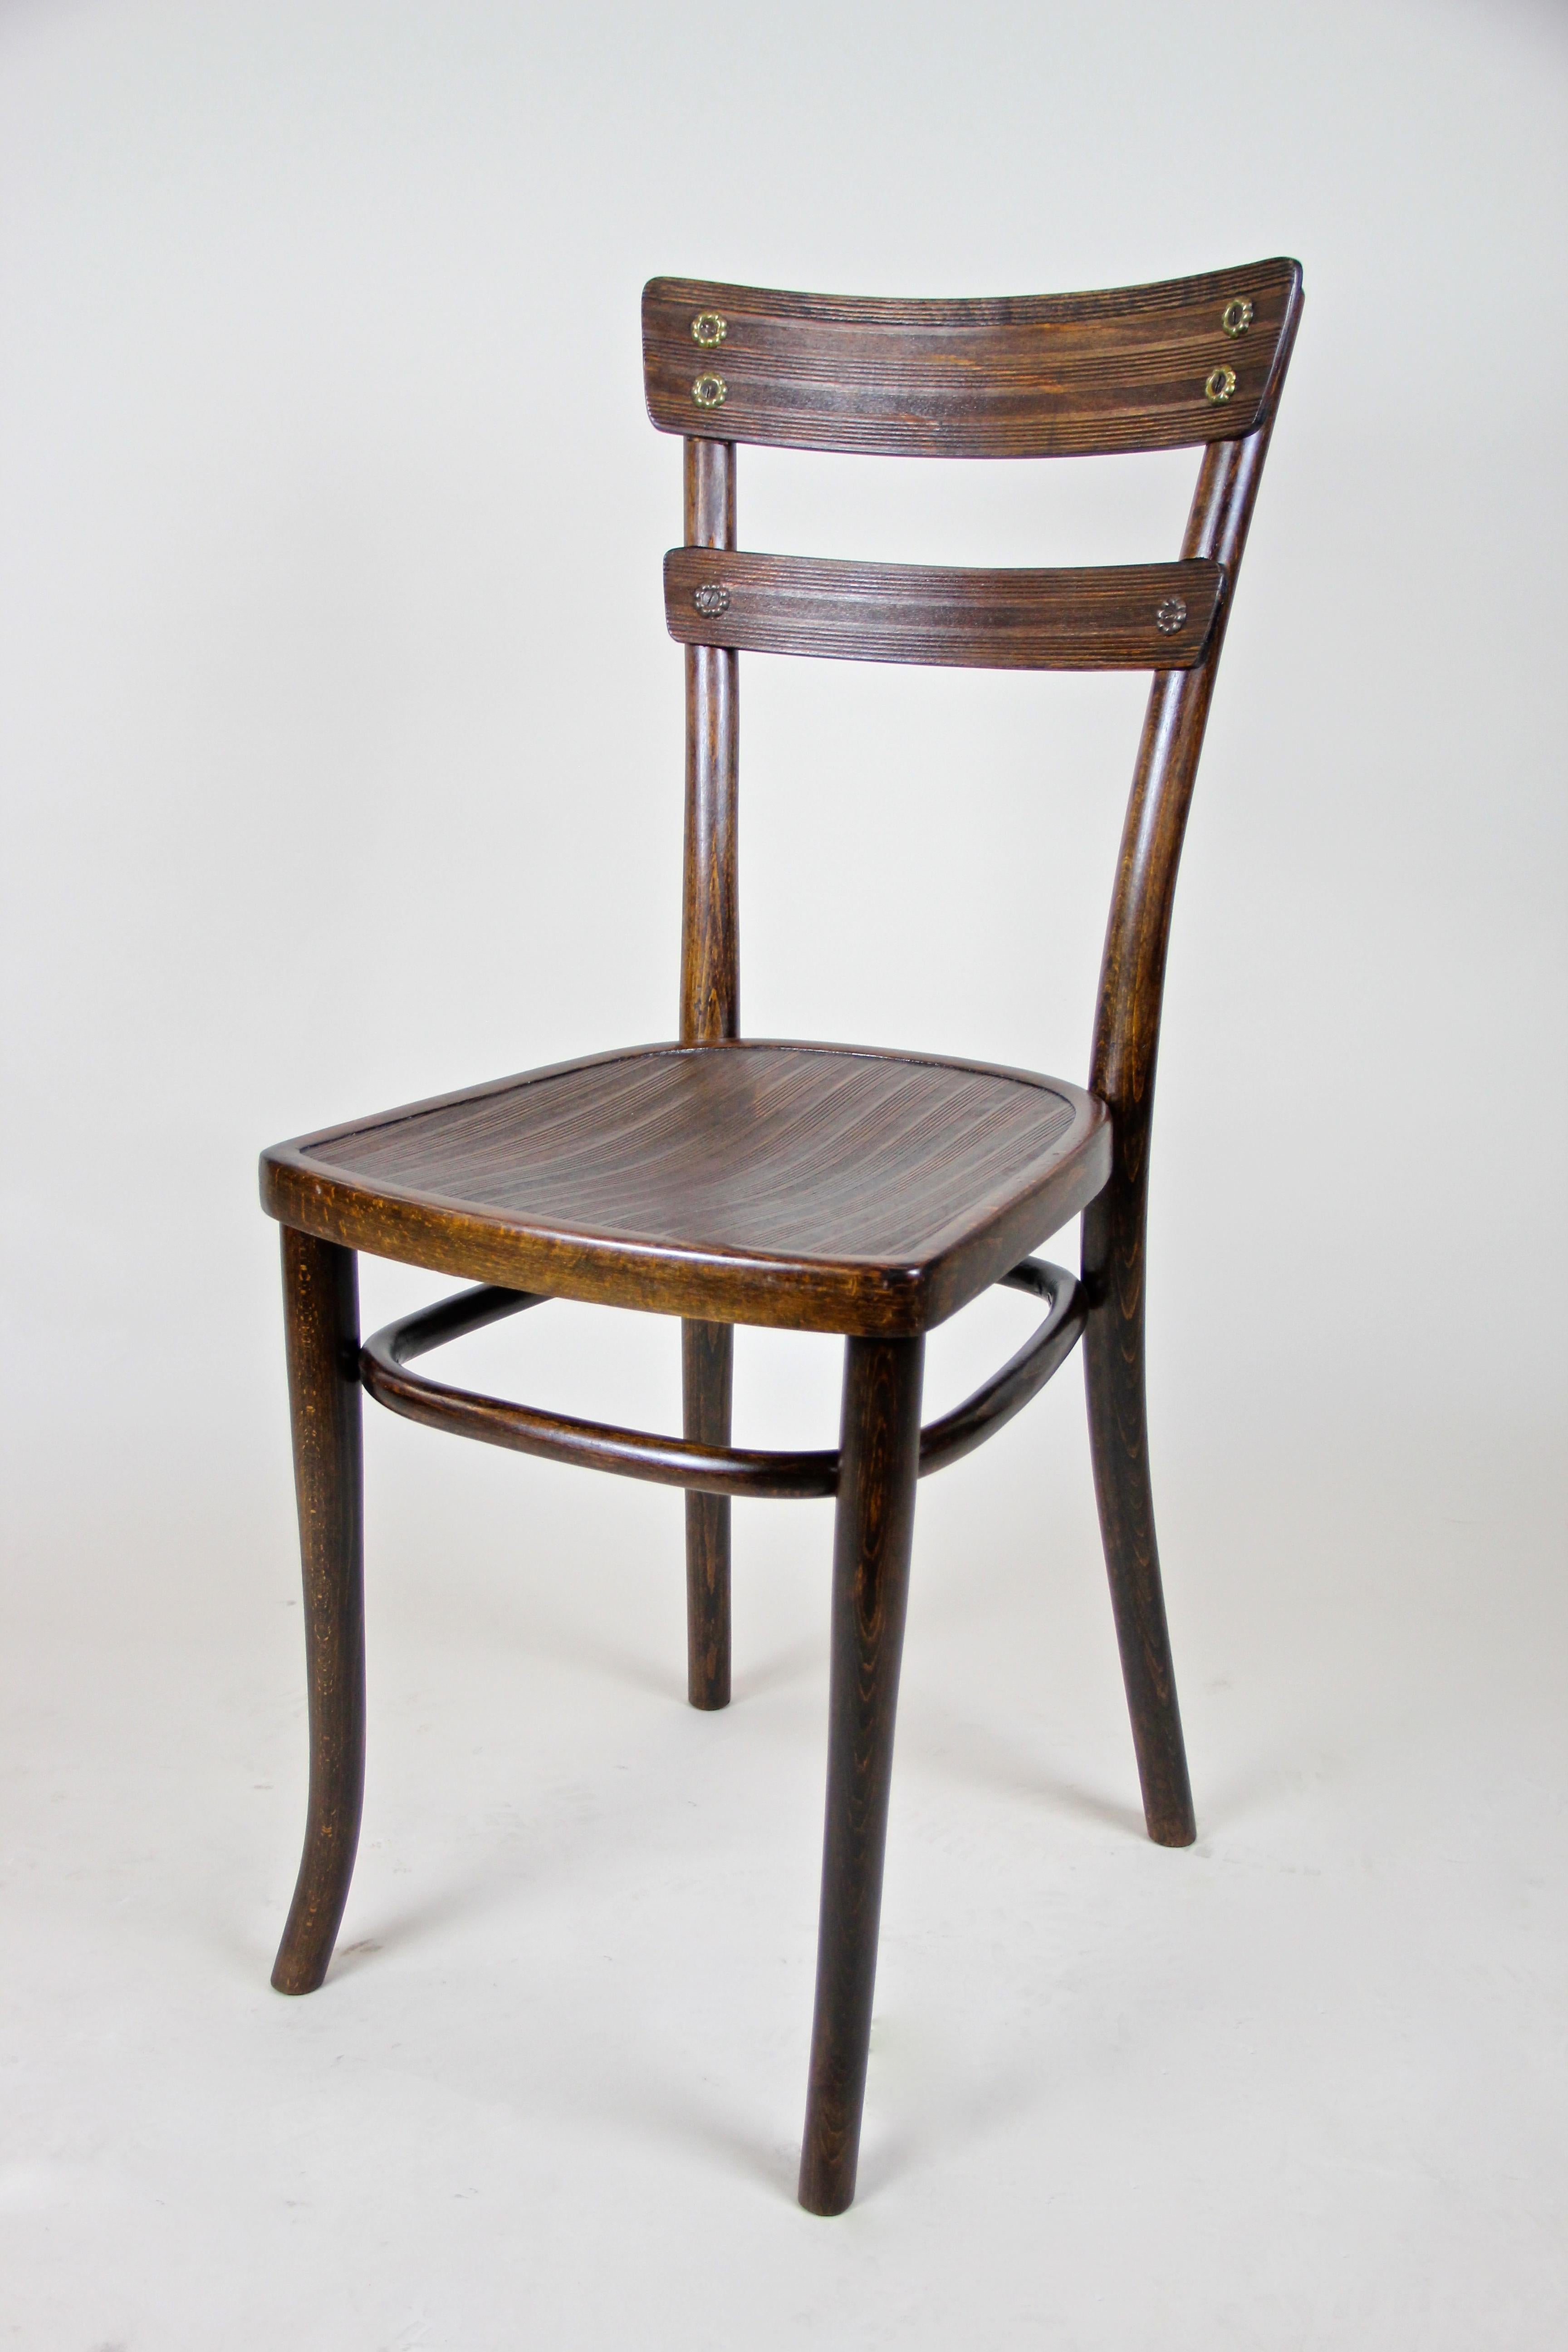 Charmant ensemble de trois chaises Thonet Art Nouveau du début du 20ème siècle en Autriche. Ces chaises en bois courbé, minces et élégantes, ont été produites à Vienne par la célèbre société Thonet vers 1905 et présentent de très beaux détails comme